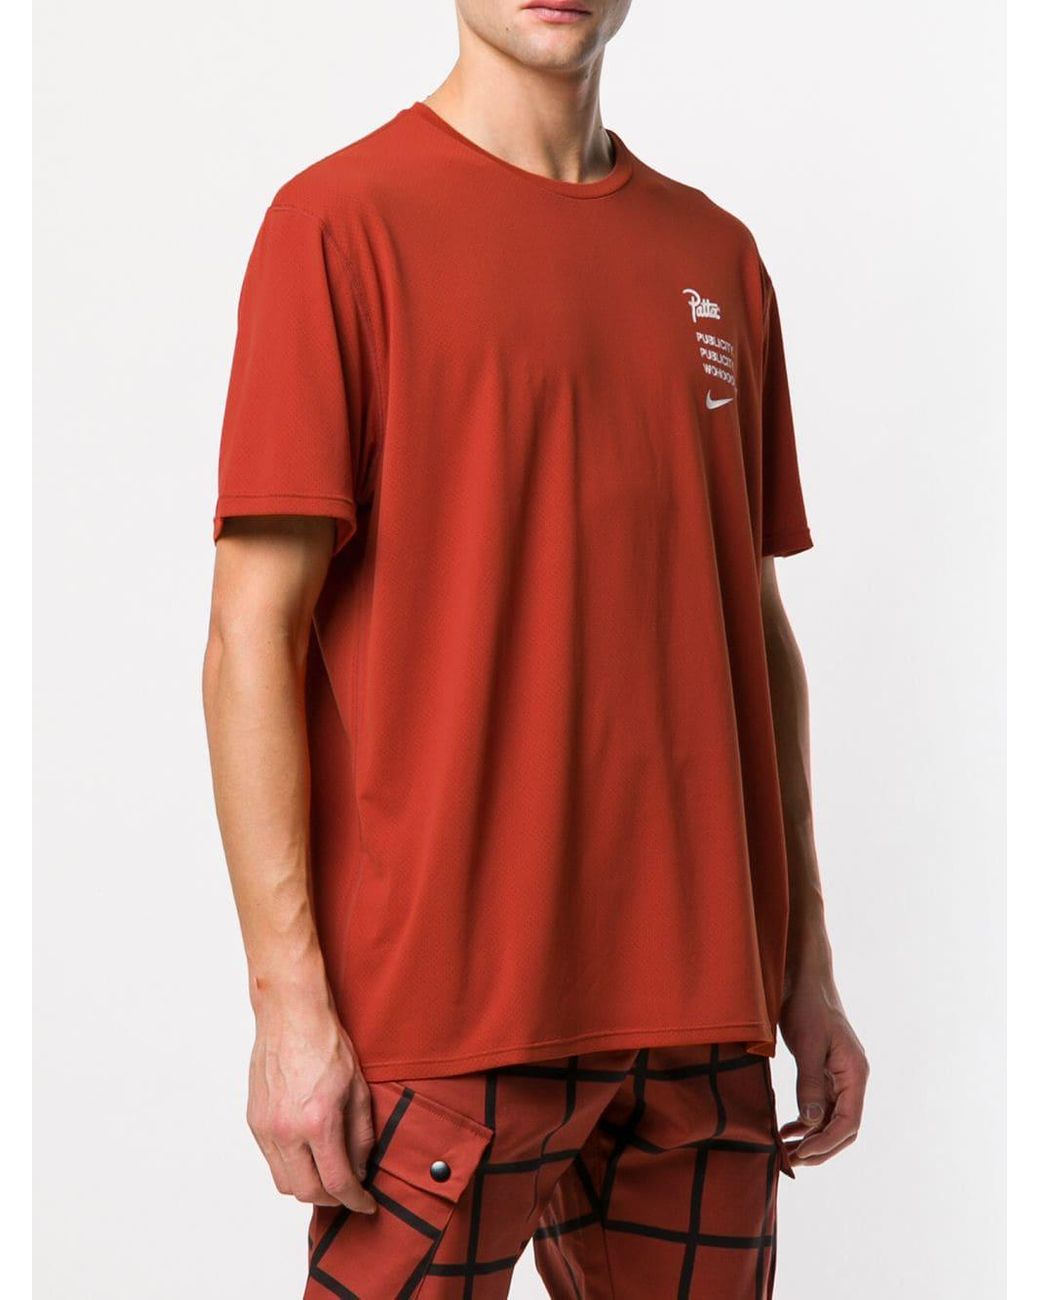 Camiseta Lab x Patta Nike de hombre de color Naranja | Lyst